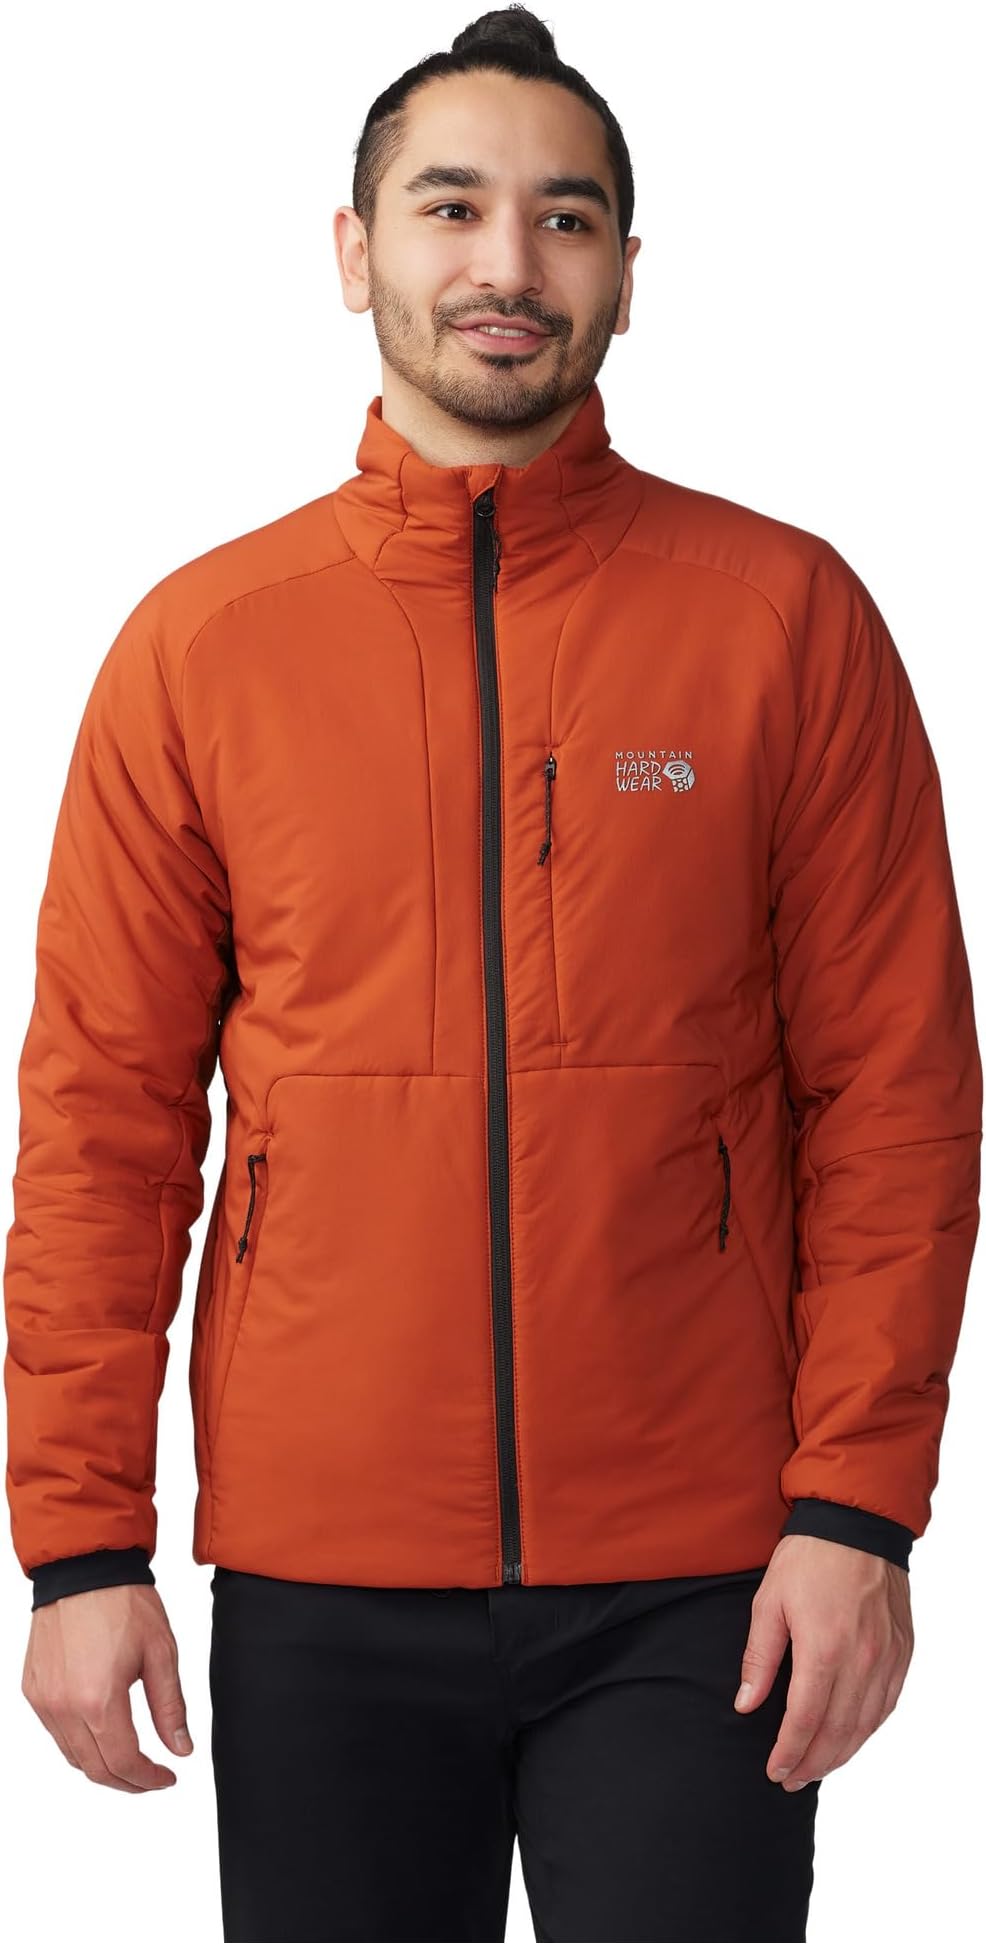 Куртка Kor Stasis Jacket Mountain Hardwear, цвет Dark Copper/Iron Oxide цена и фото